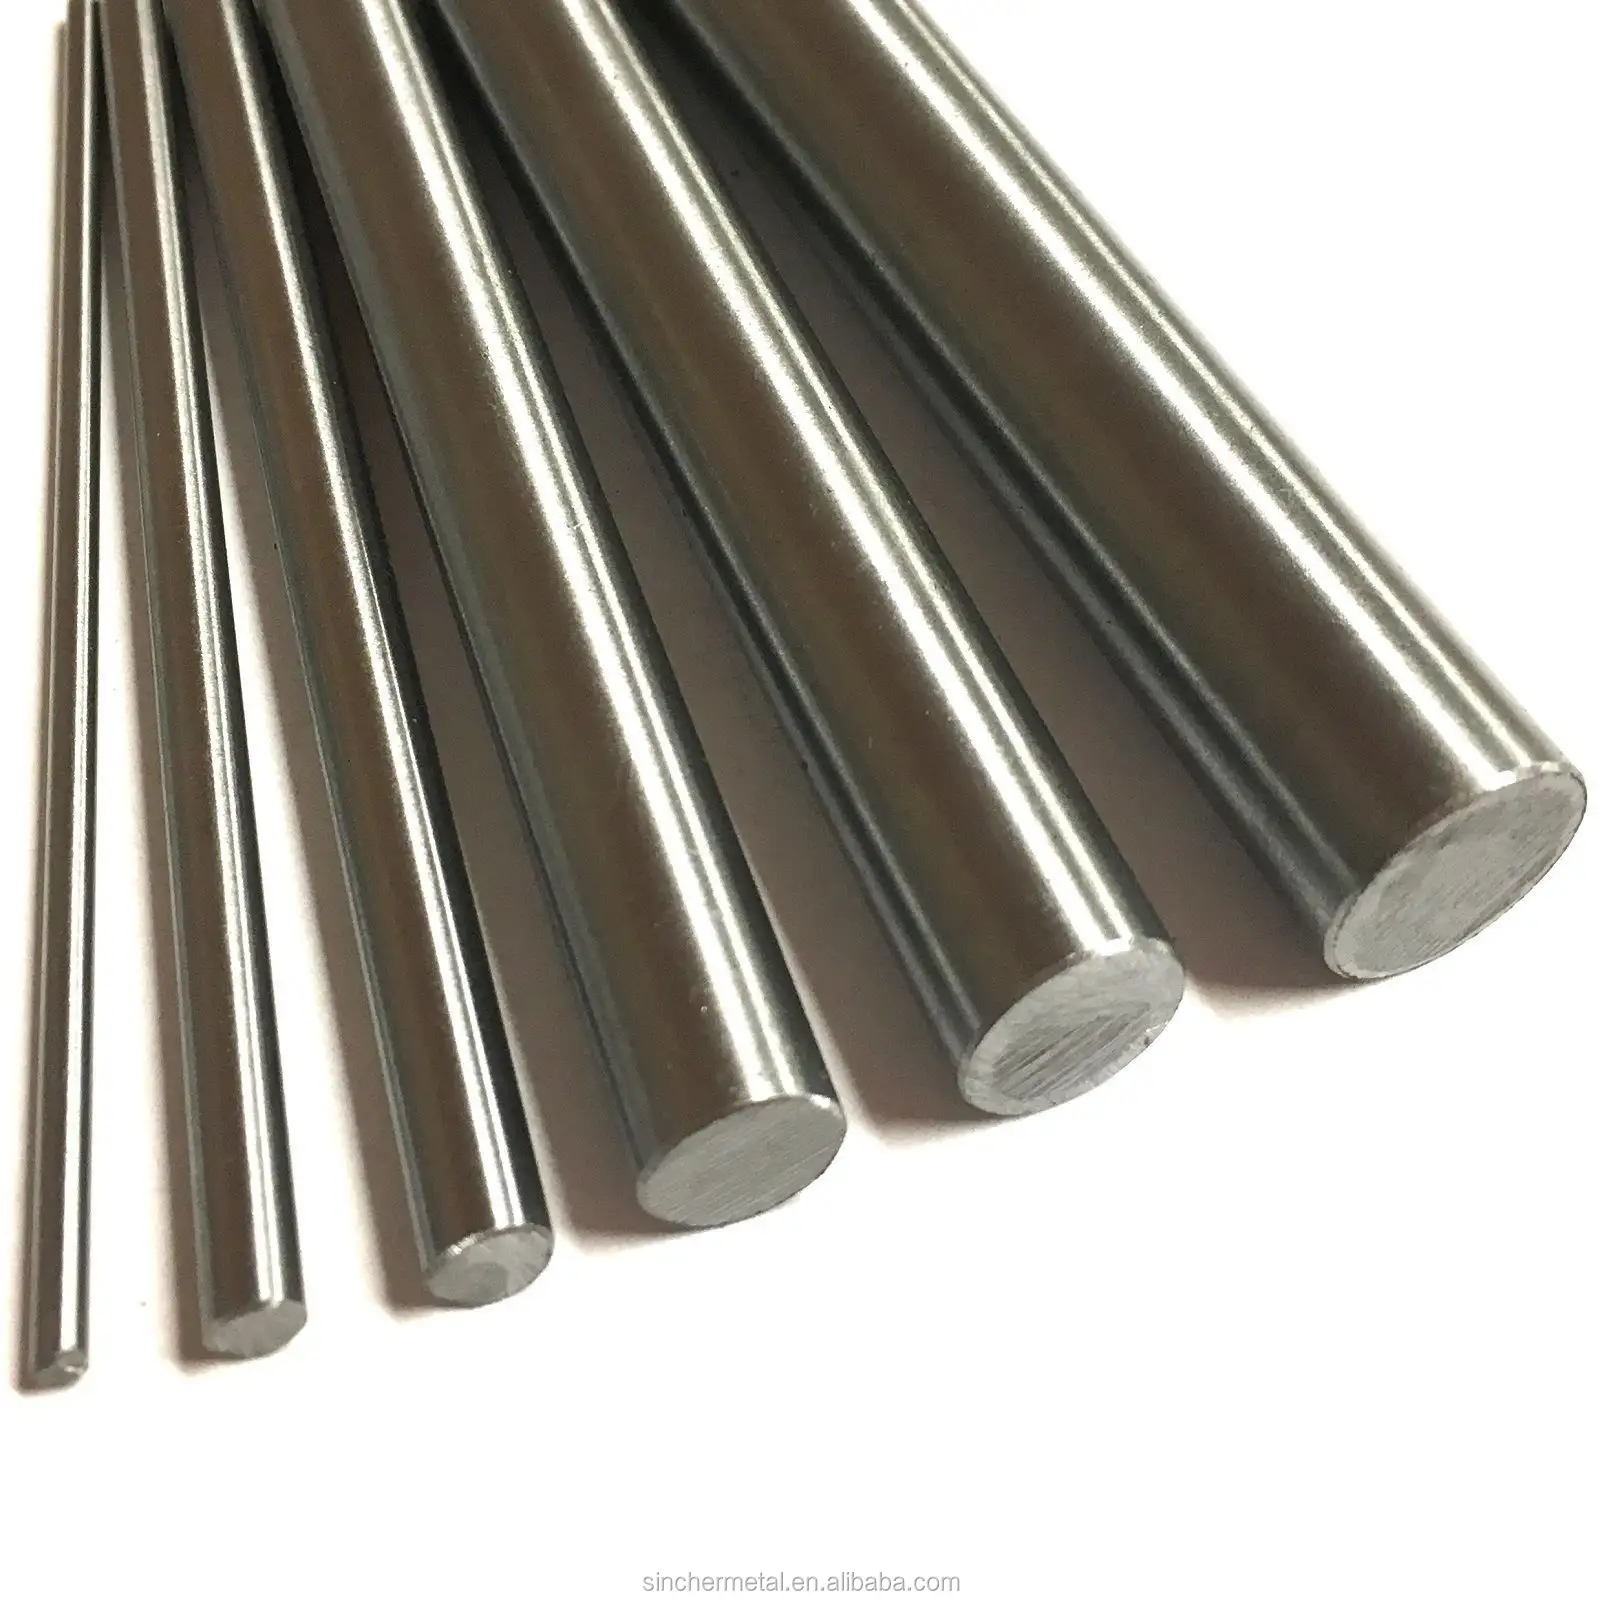 Besi sudut 2x2 sudut baja, sudut sama harga per kg batang sudut baja tahan karat